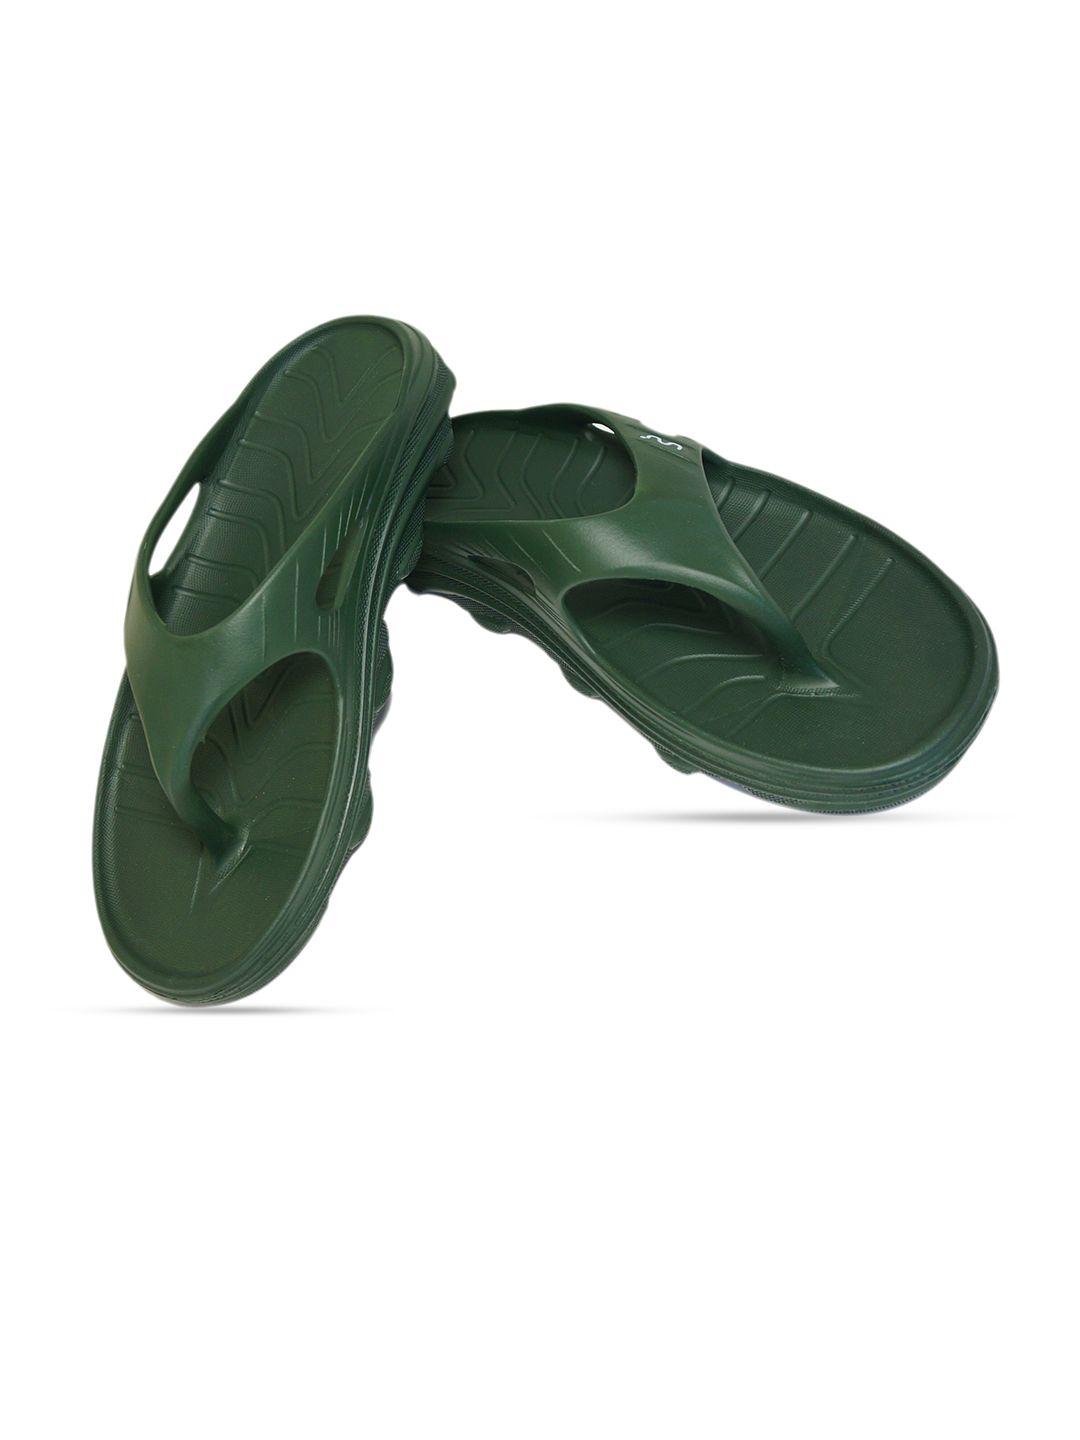 doubleu men olive green rubber thong flip-flops